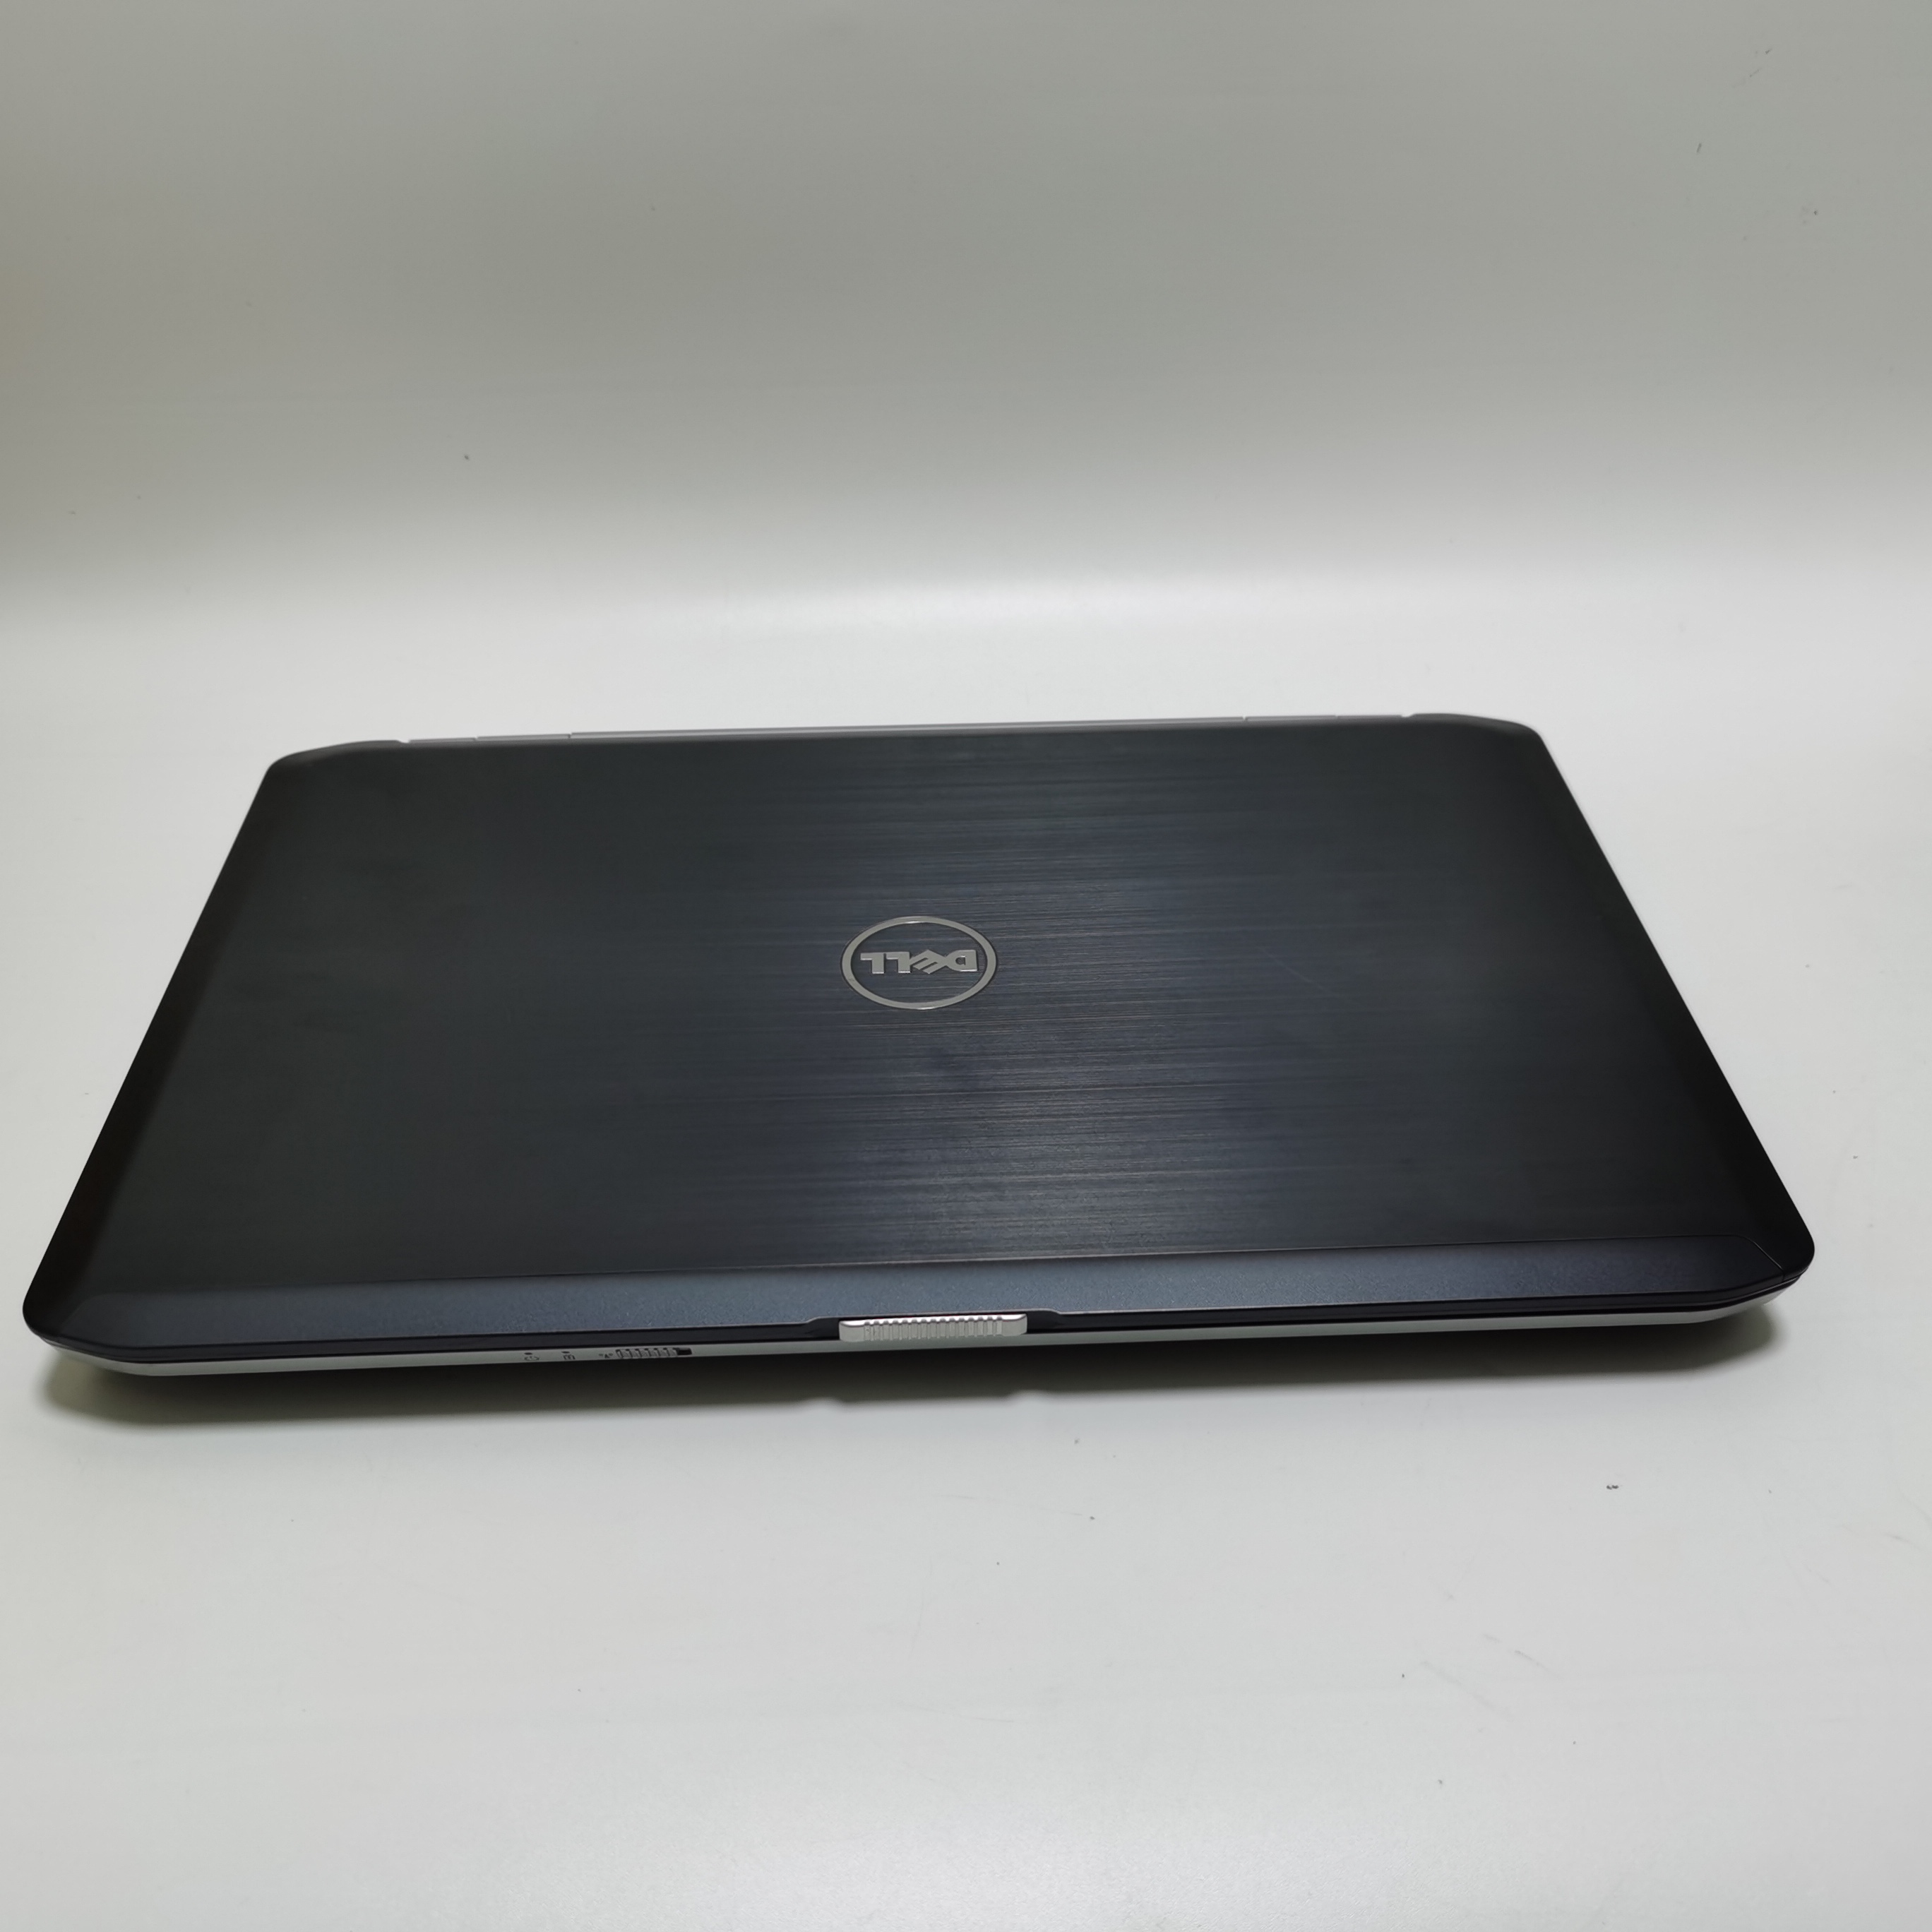 มุมมองเพิ่มเติมของสินค้า โน๊ตบุ๊ค notebook Dell E5530 i5 gen3 15.6 inch  //  Lenovo ThinkPad  M14 โน๊ตบุ๊คมือสอง  โน๊ตบุ๊คถูกๆๆ  คอมพิวเตอร์  คอม  laptop pc